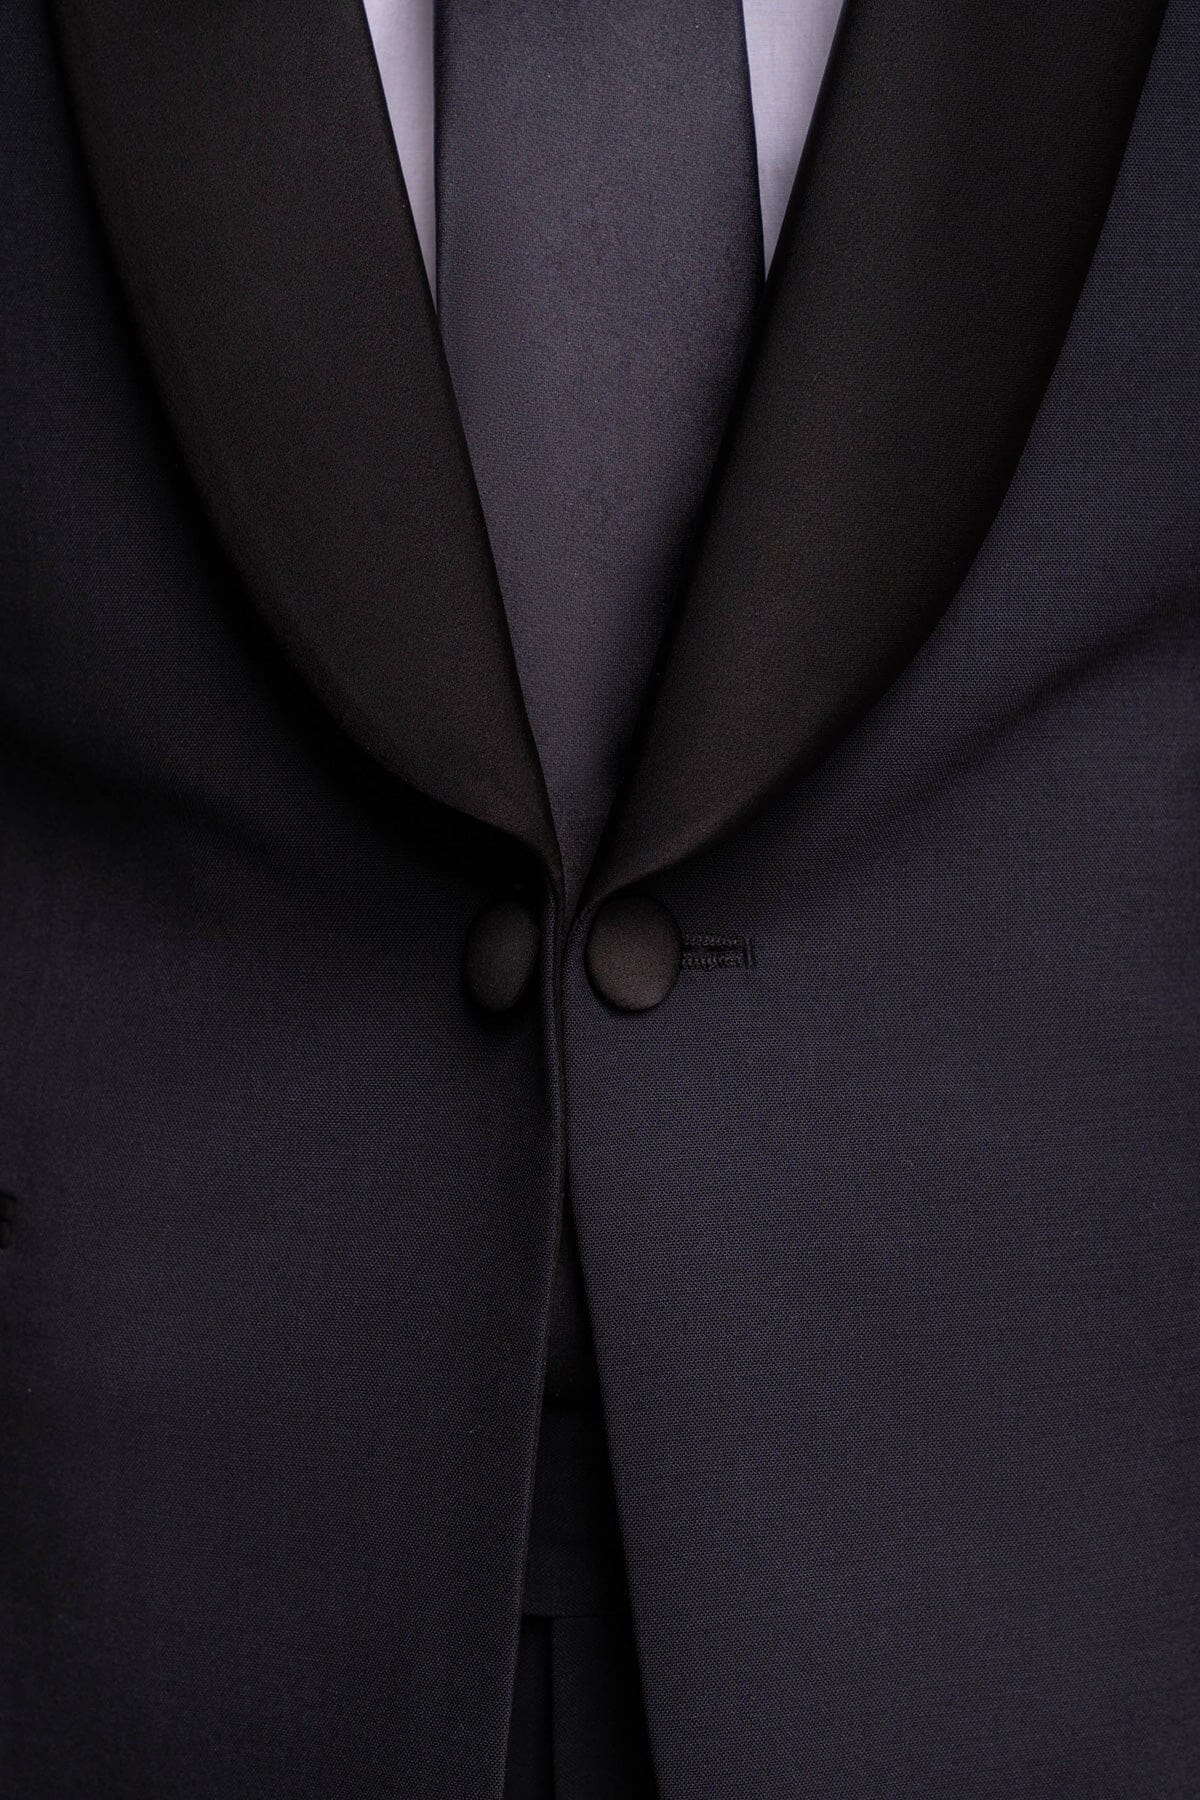 Aspen Midnight Navy Tuxedo 2 Piece Suit - Suits - 